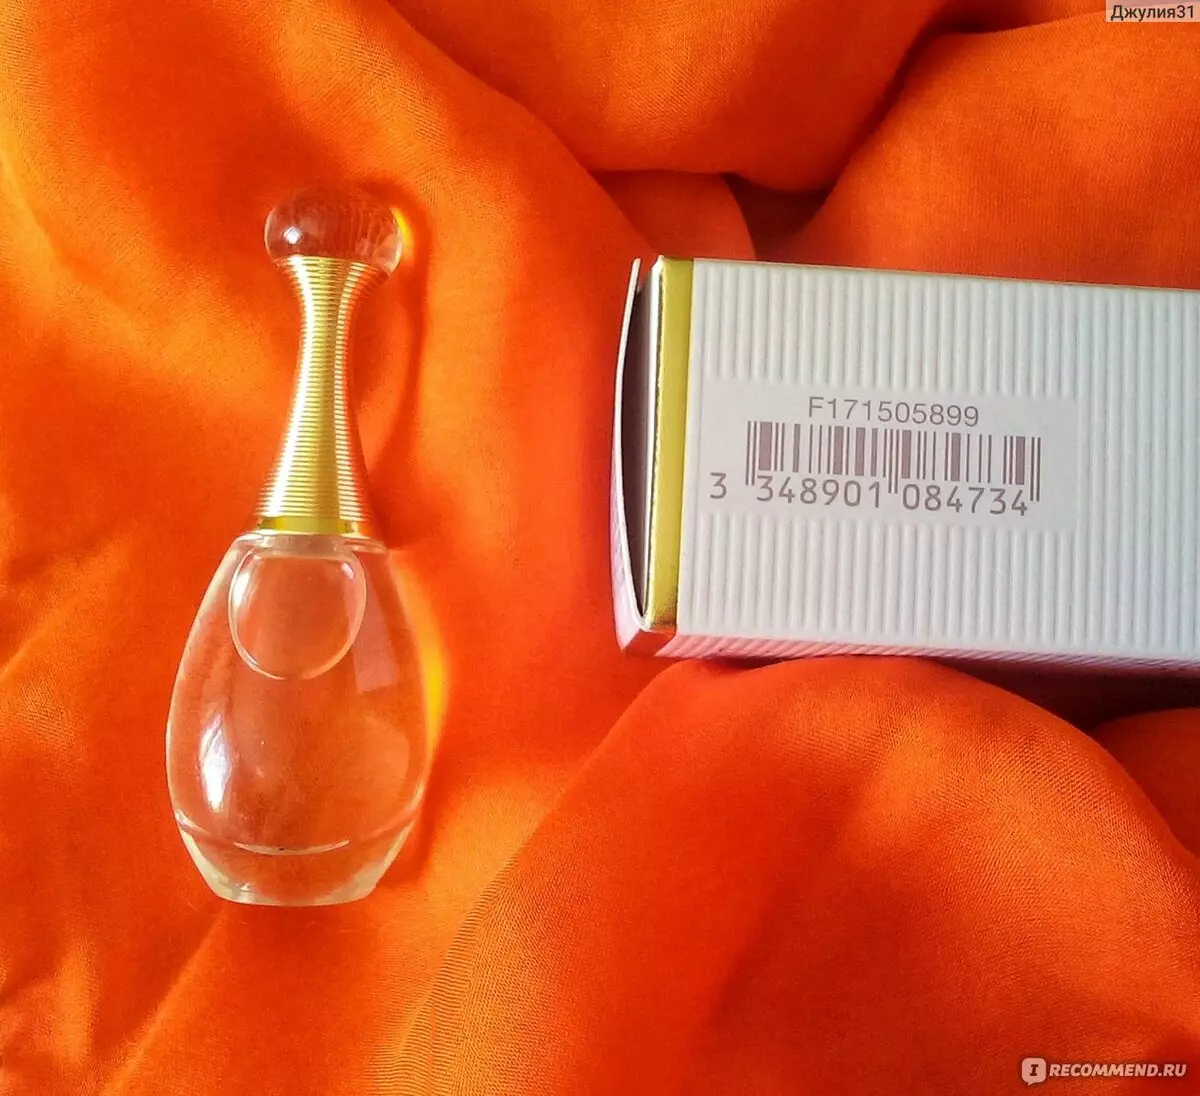 香水迪奥（56张图片）：女式香水，迪奥尔和j'adore艾滋病卫生间水，男士索道，脱发和盛开的花束，其他法国香水 25161_54